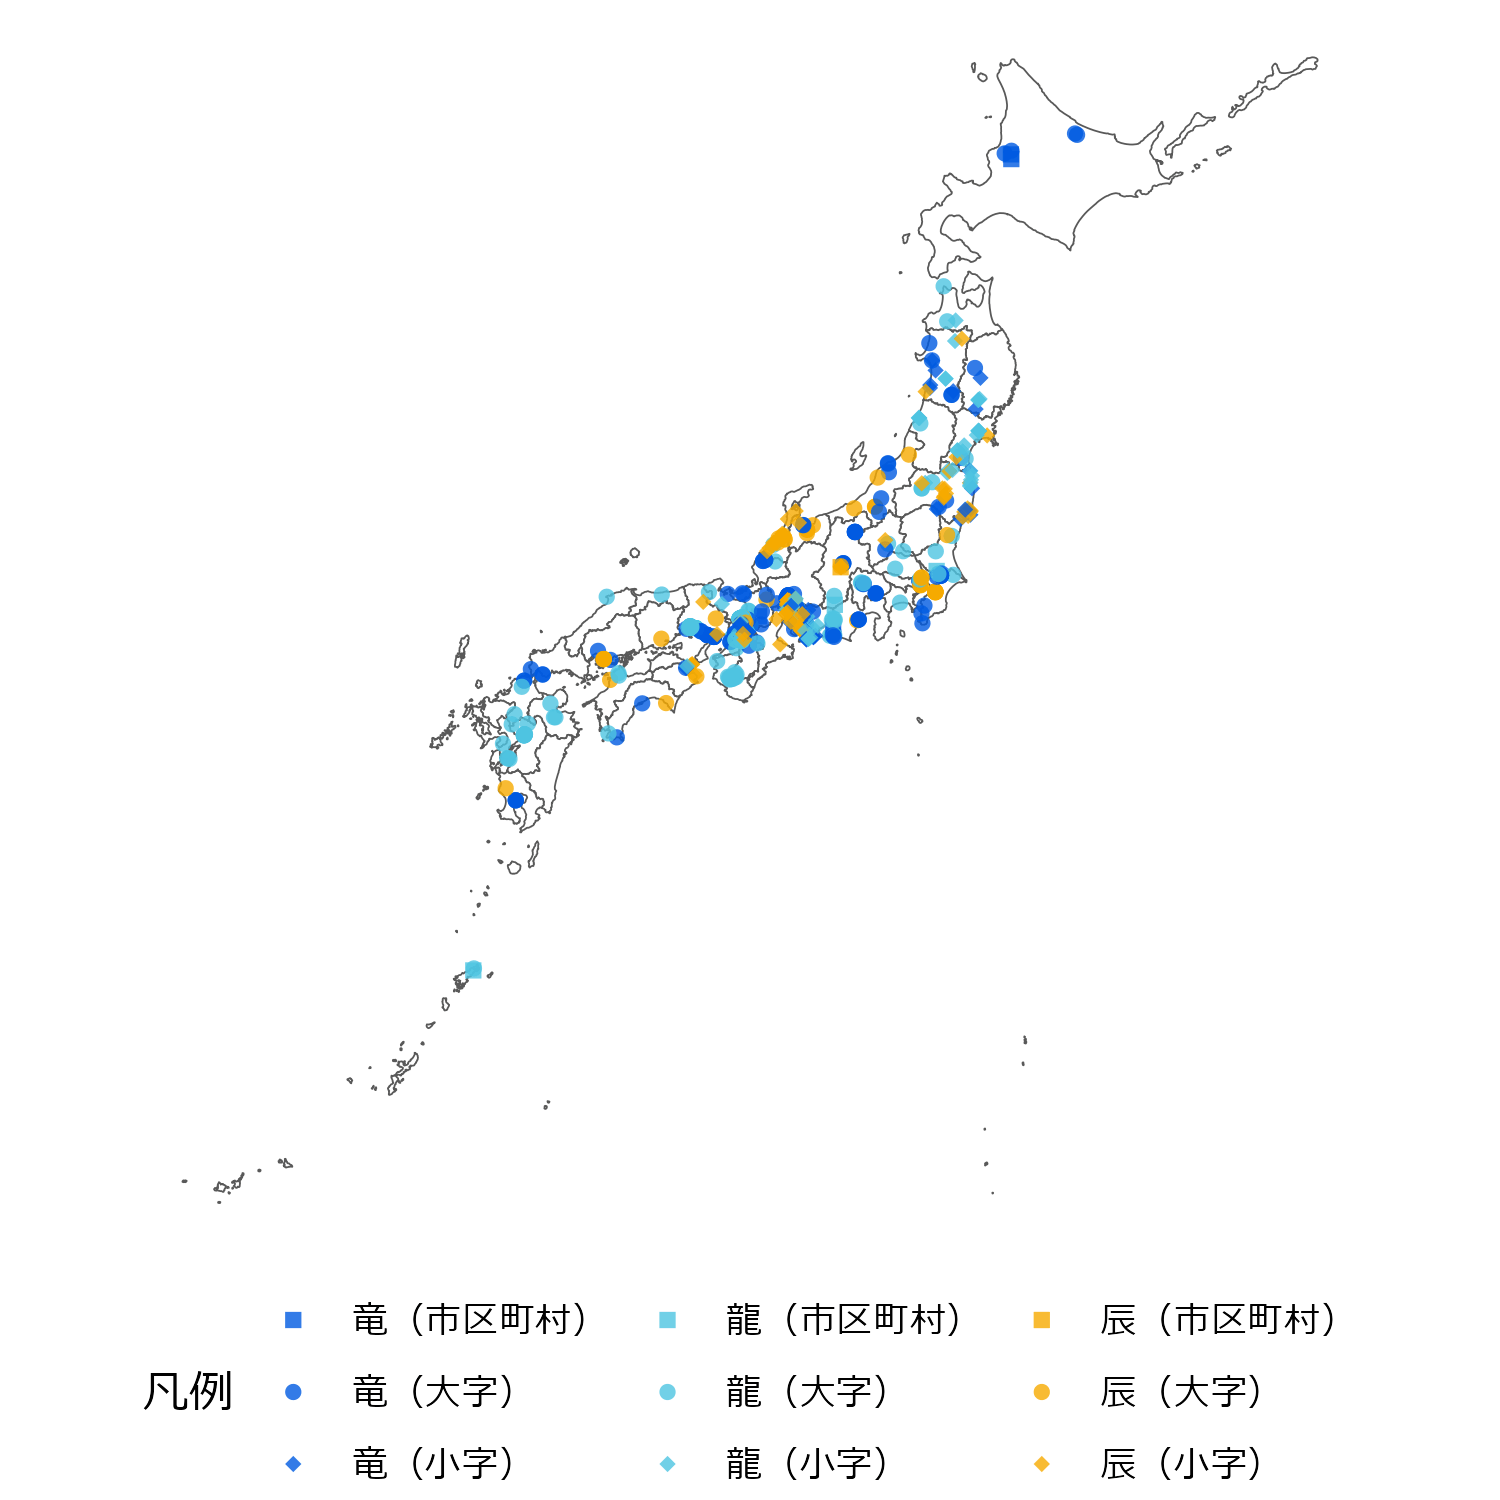 「竜」・「龍」・「辰」を含む地名を日本地図上にプロットしたもの。